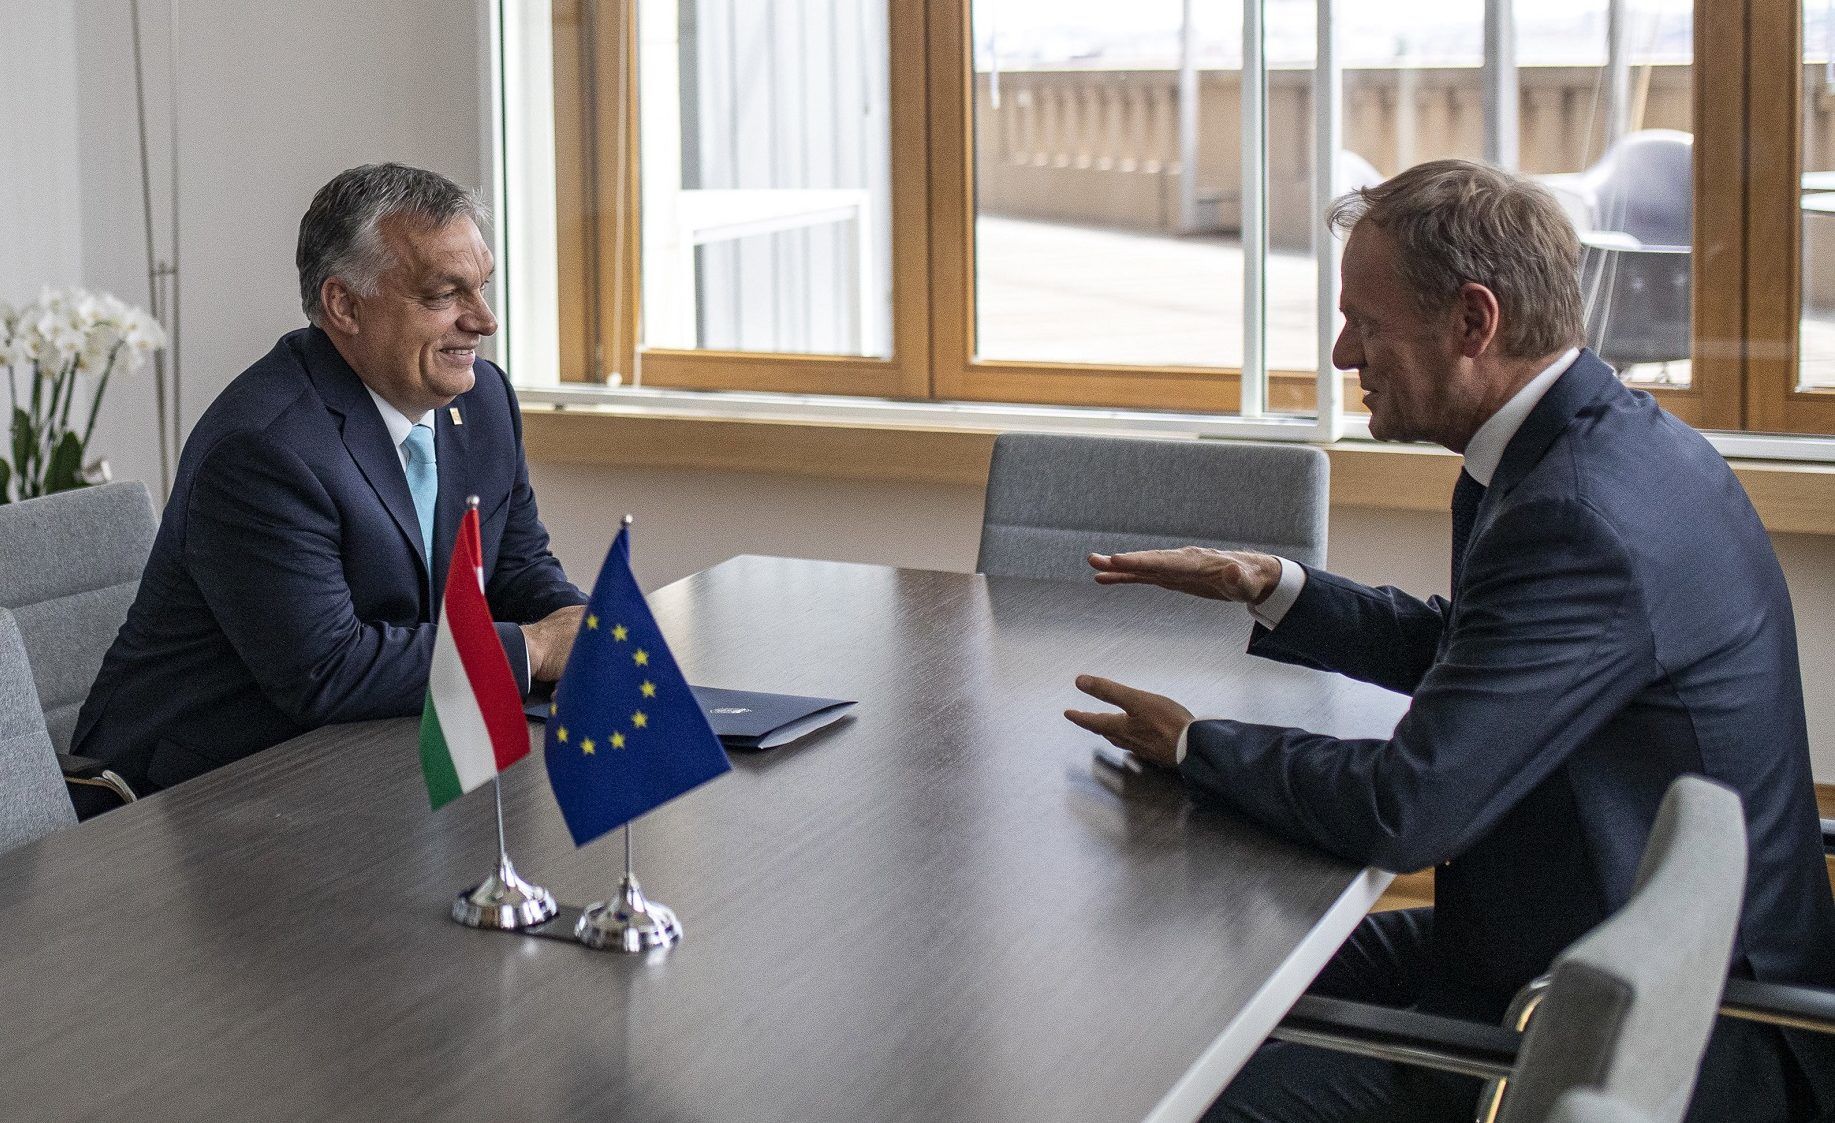 Magyar kérésre halasztották el az Orbán-Tusk találkozót